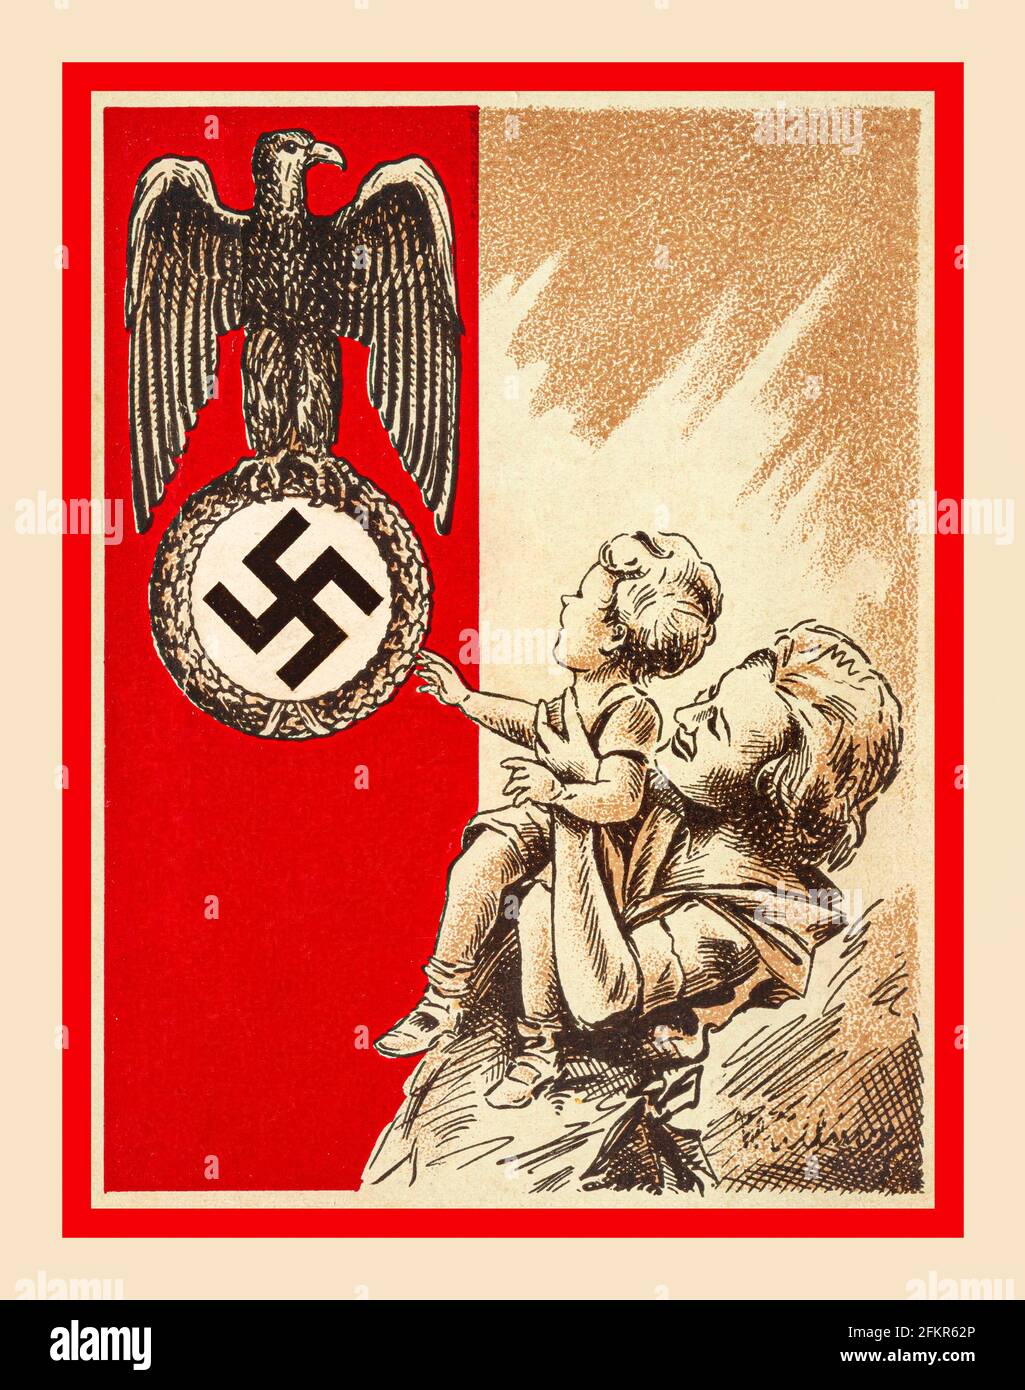 NAZI-HAKENKREUZFAMILIE ANBETUNG 1939 Propaganda Postkarte Nazi-Deutschland zeigt Mutter und Kind mit dem Vaterland Nazi-Adler und Swastika als nationales Guardian-Symbol, das verehrt und bewundert wird... Stockfoto